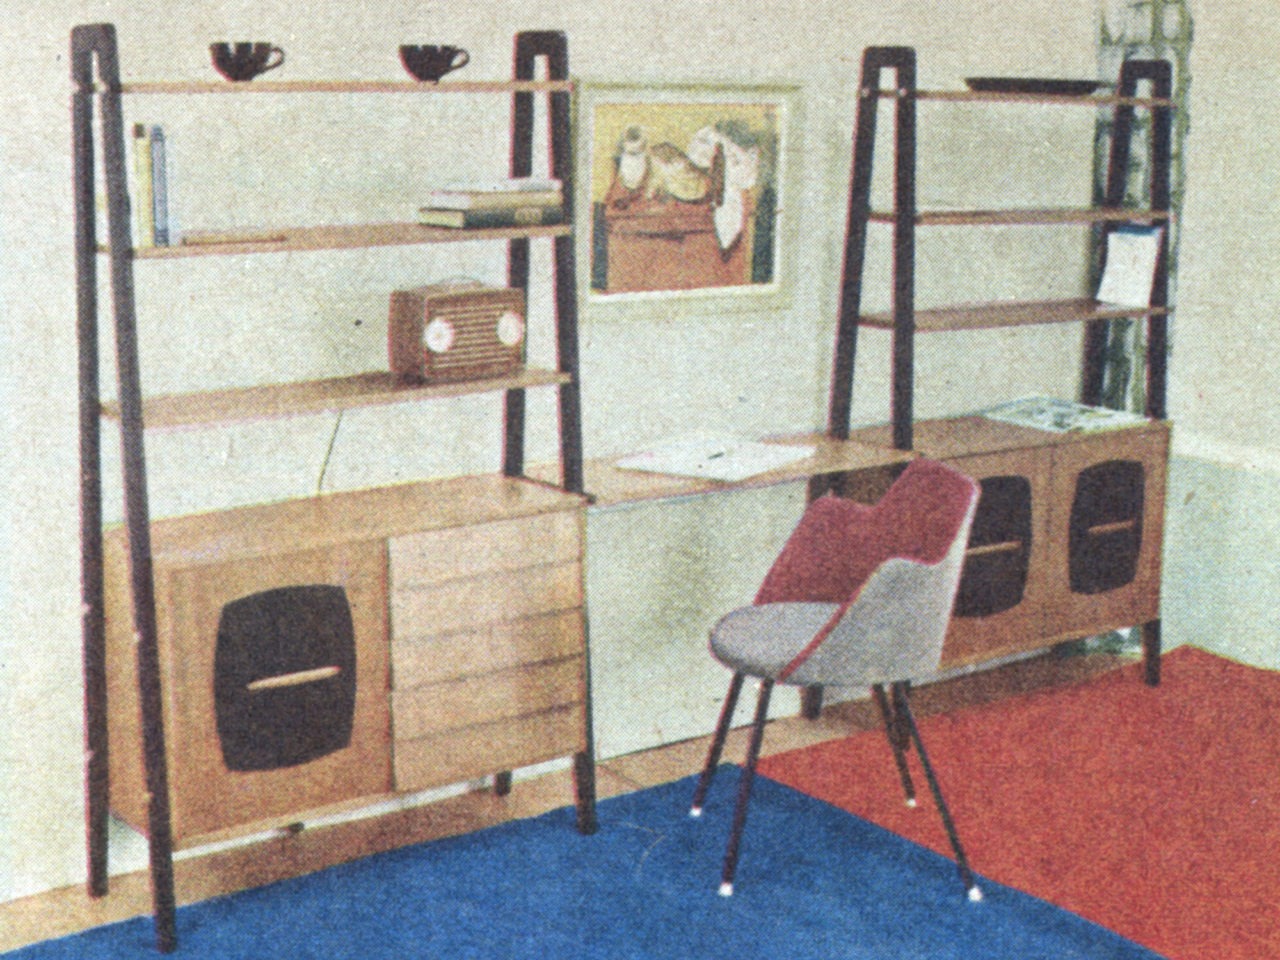 Fauteuil et meubles de rangement encadrant un bureau, style épuré et fonctionnel. Tapis rouge et bleu au sol.